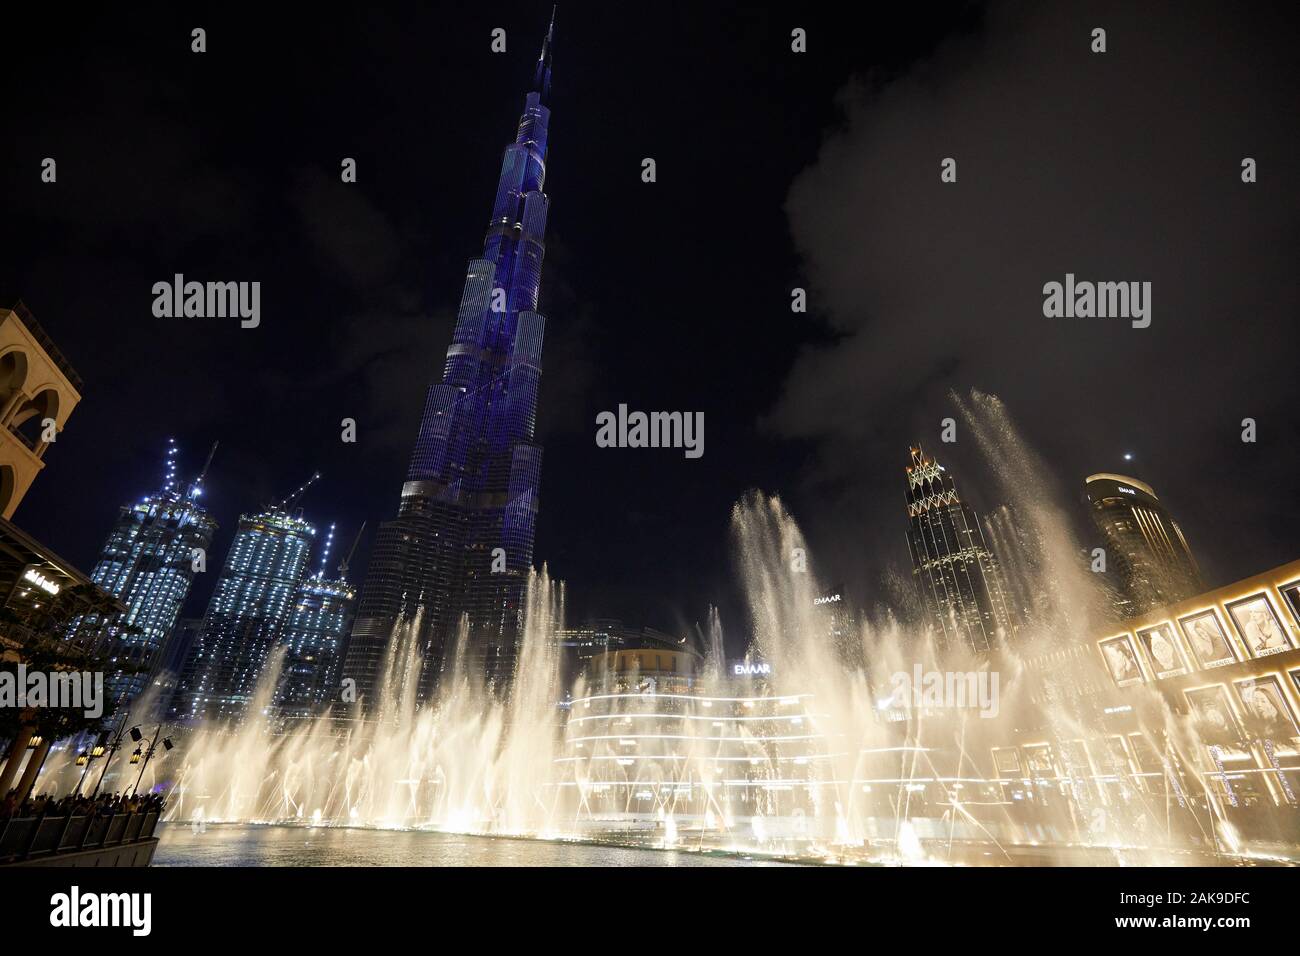 DUBAI, EMIRATOS ÁRABES UNIDOS - Noviembre 21, 2019: el Burj Khalifa rascacielos iluminados en azul y la fuente se mostrará delante de Dubai Mall en la noche Foto de stock